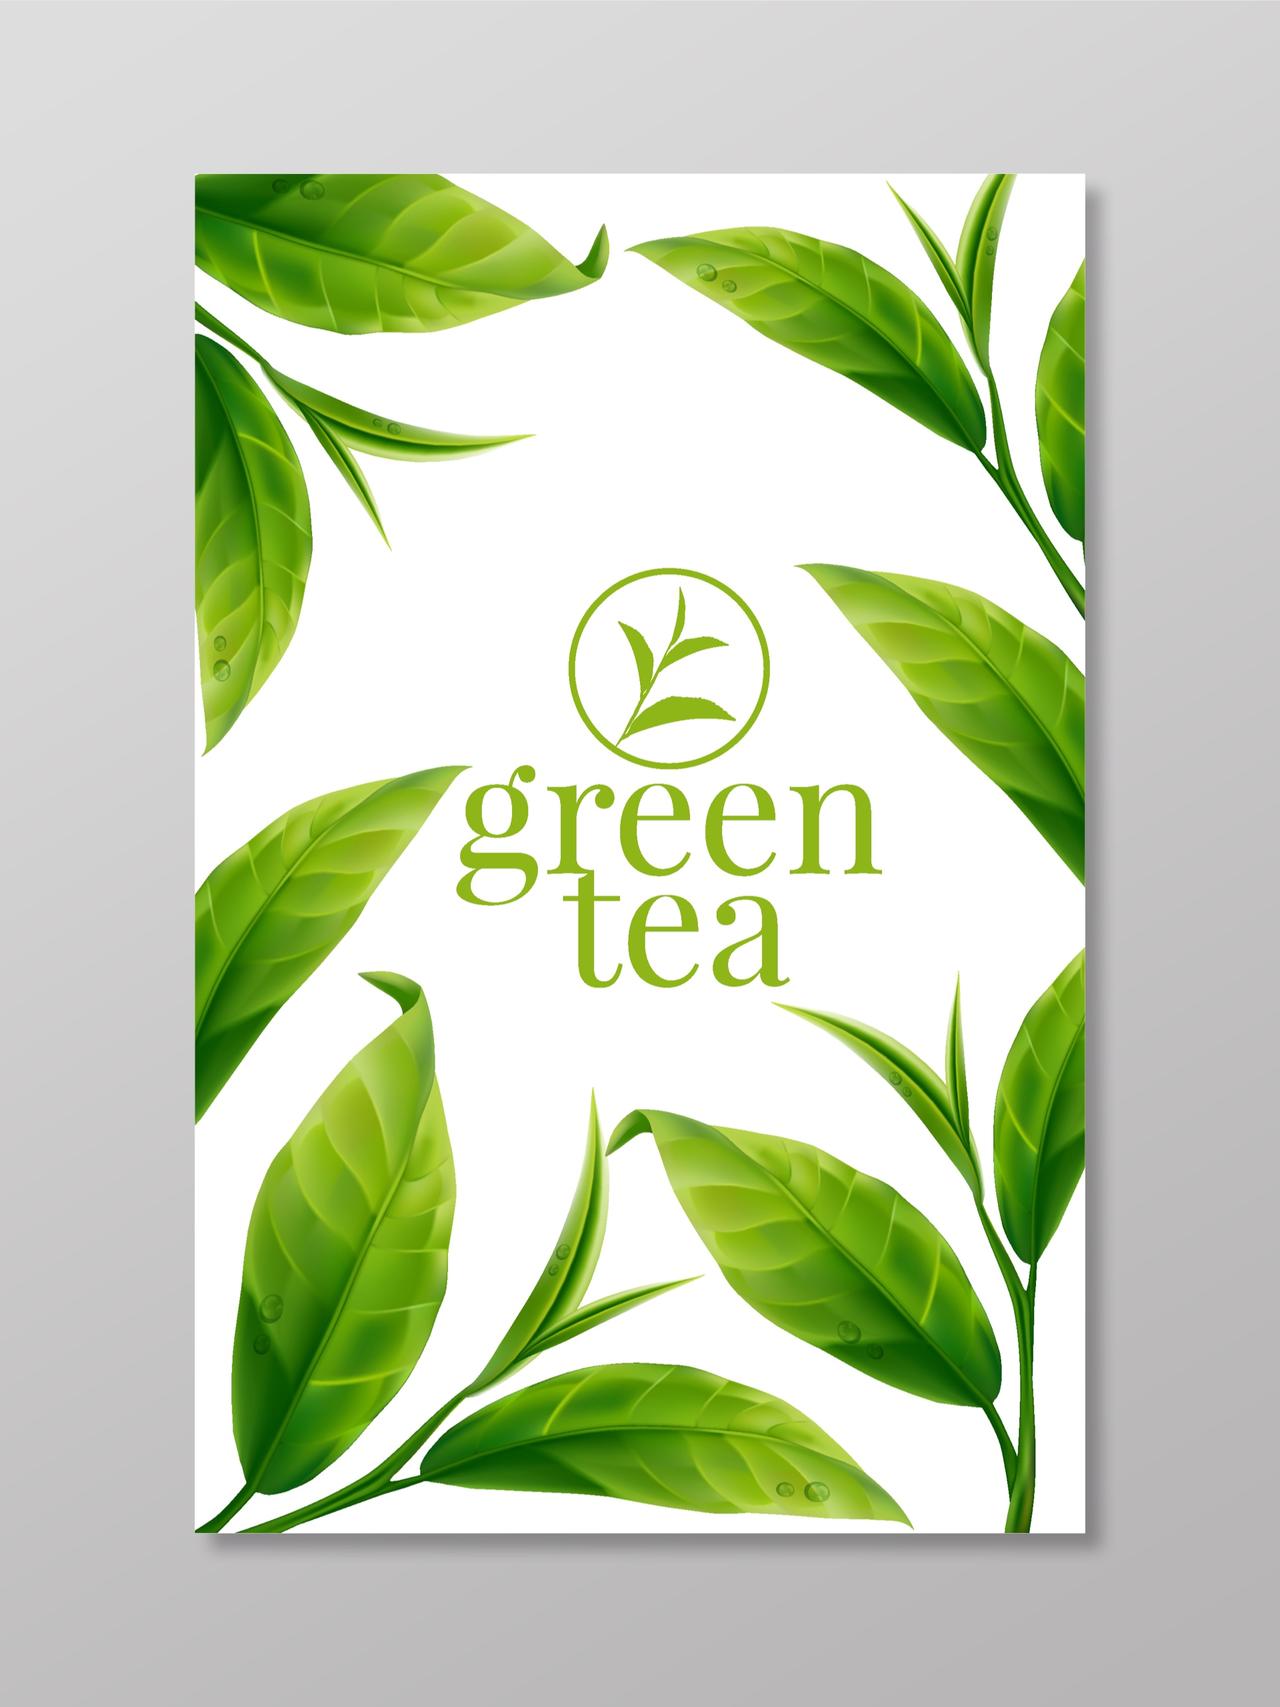 清新绿茶海报